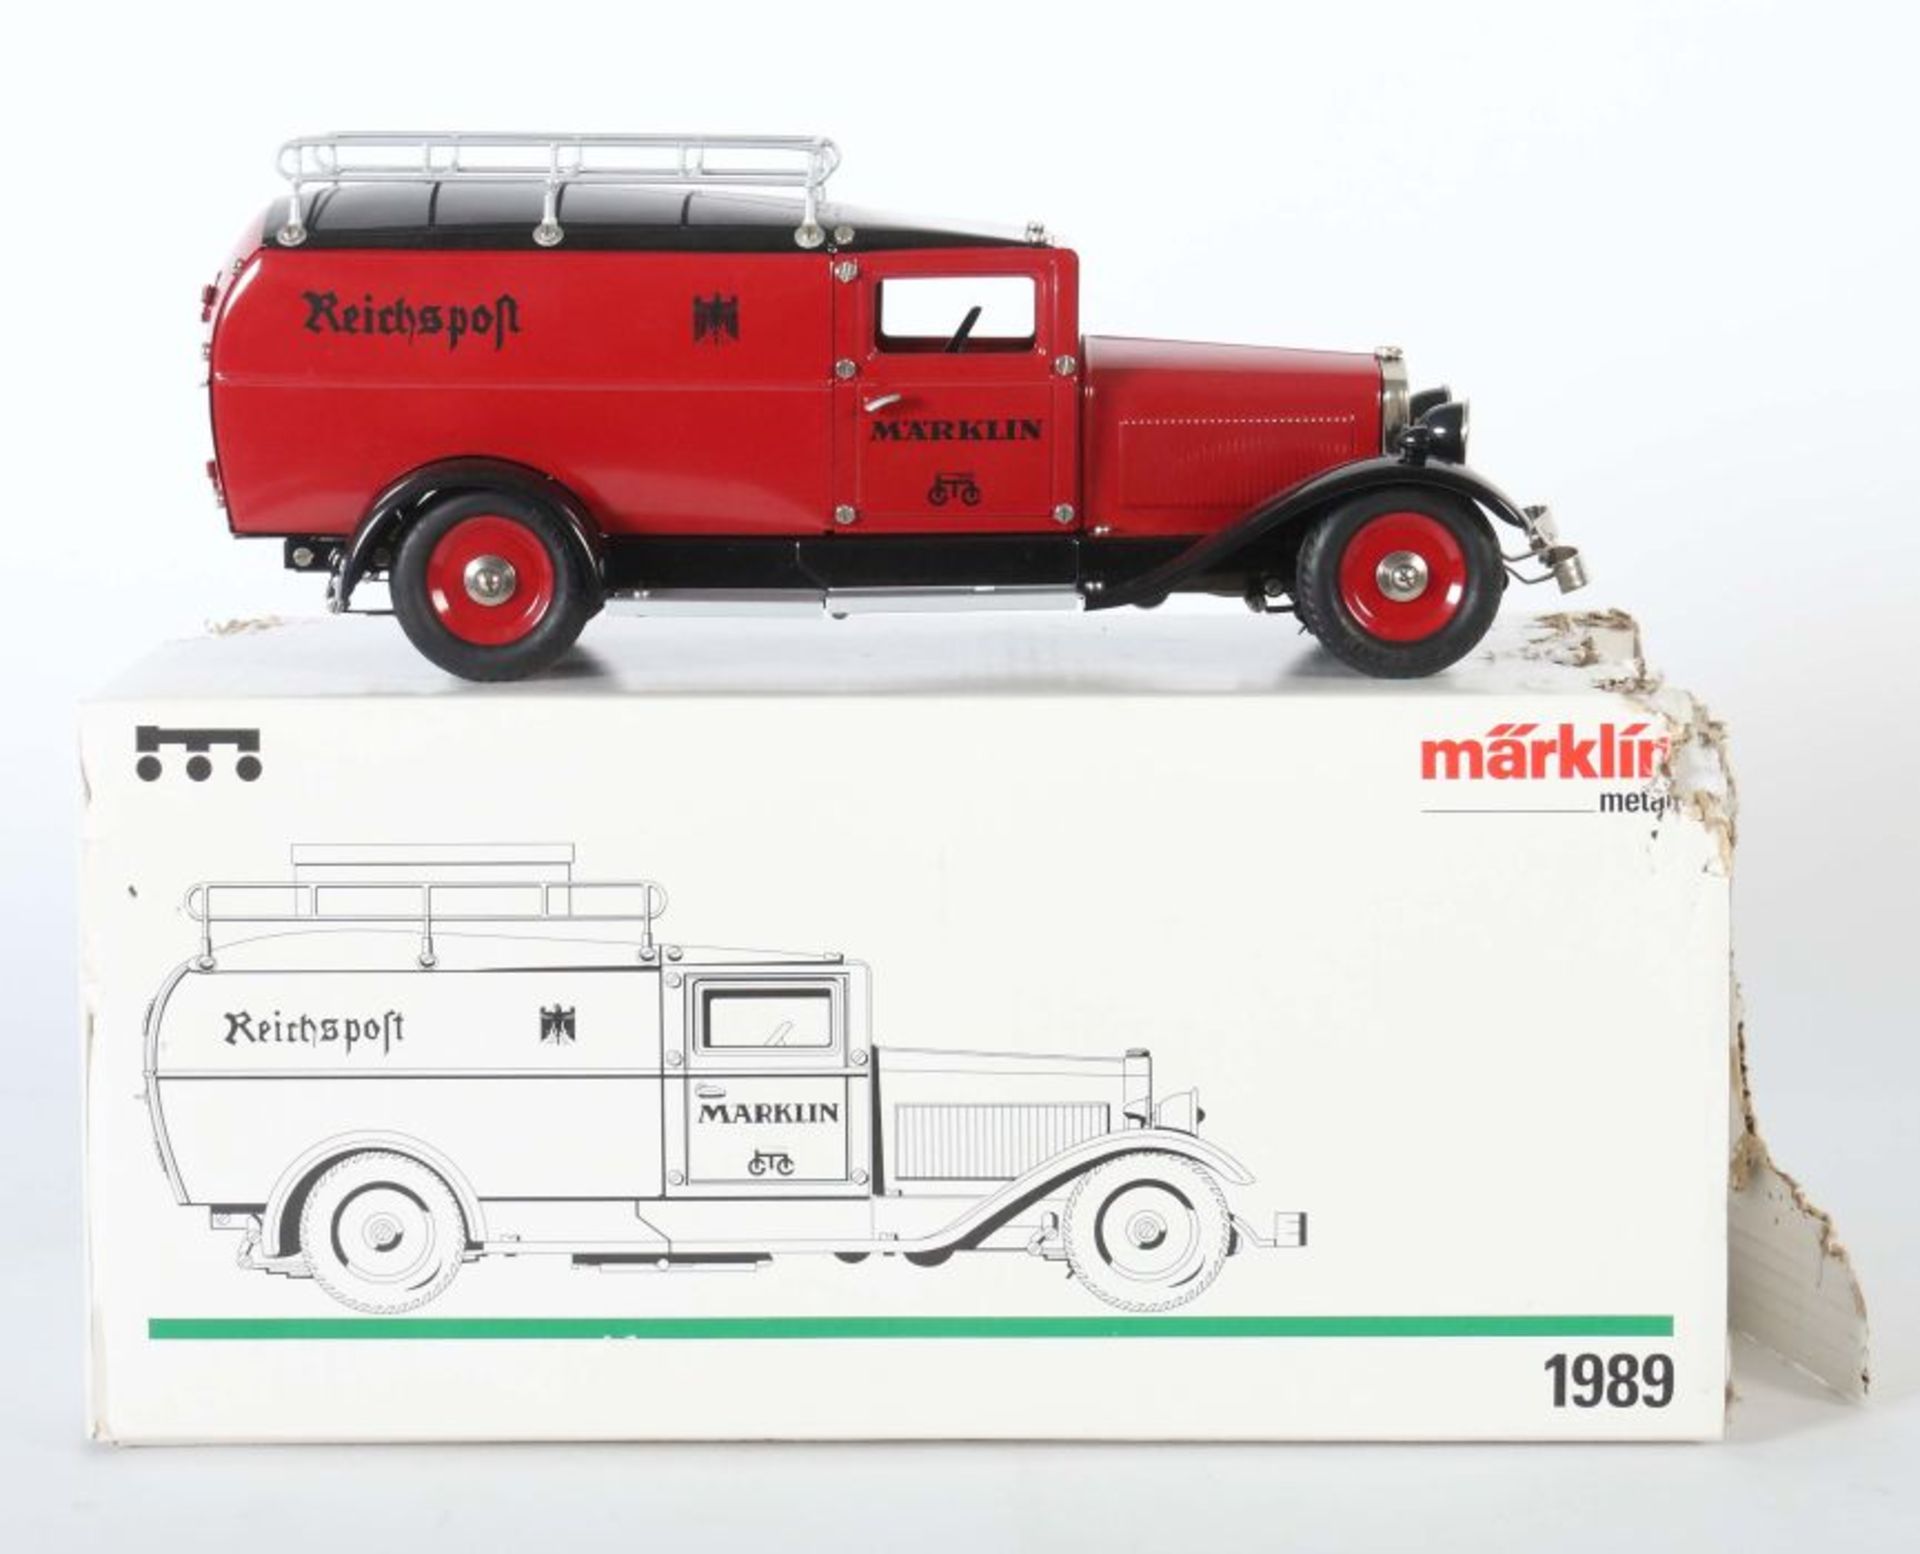 Reichspostwagen Märklin, Replika, Modellnr. 1989, dunkelrot-schwarzer Reichspostwagen in - Bild 2 aus 2